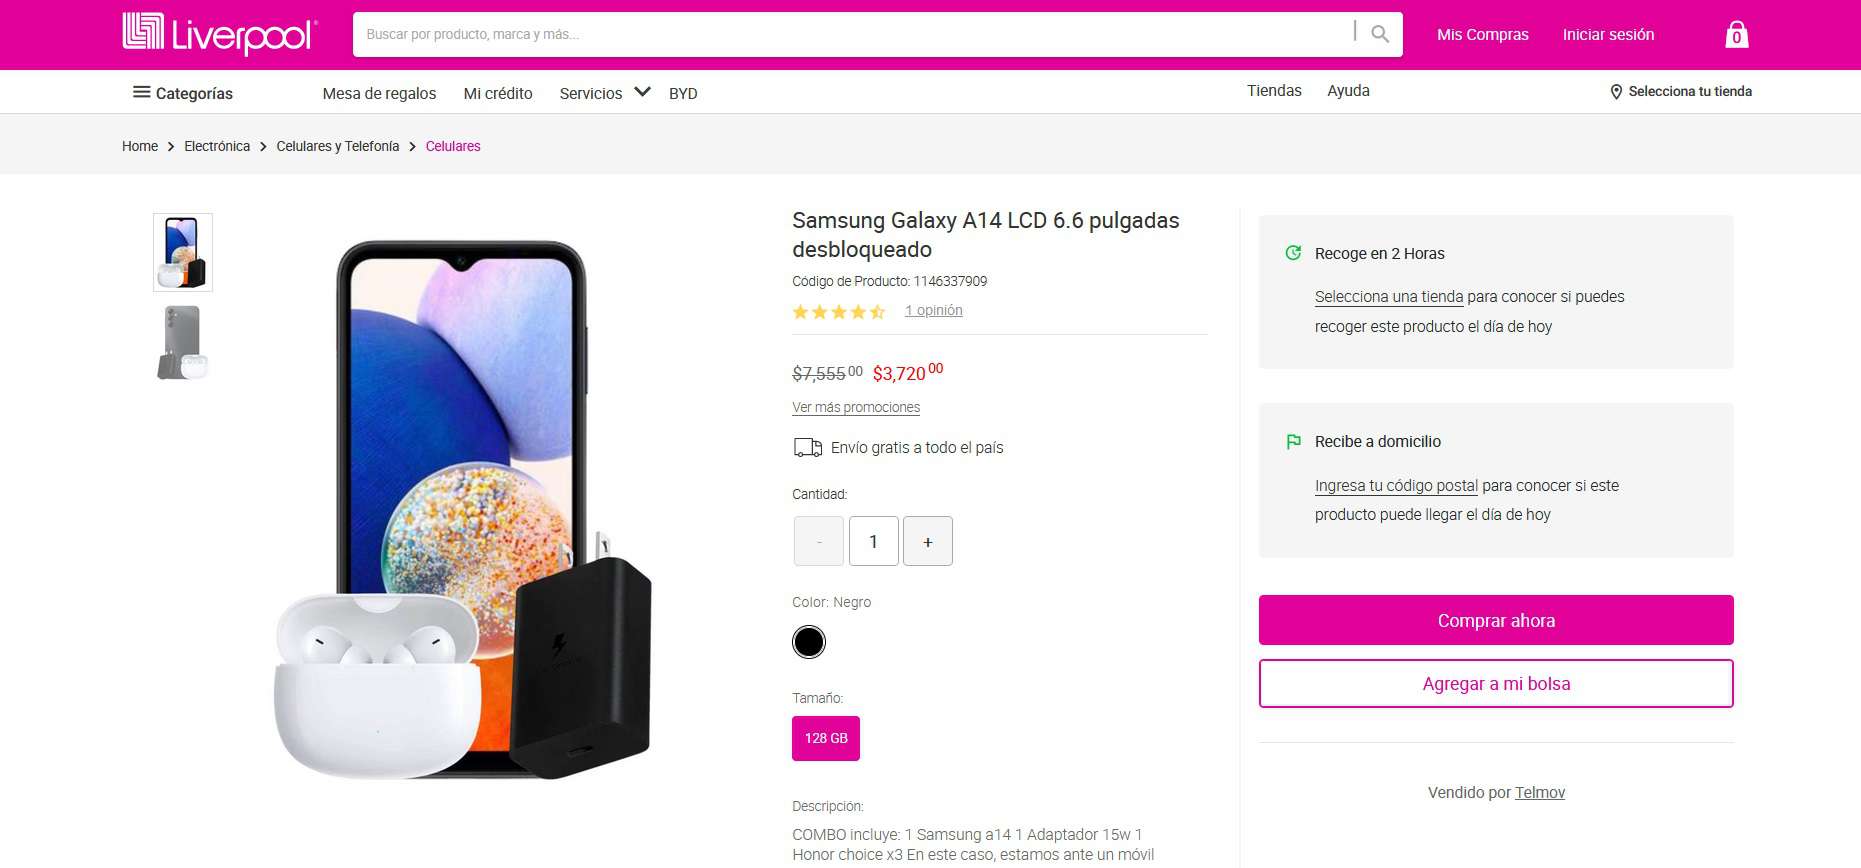 Smartphone Samsung Galaxy A14 en rebaja